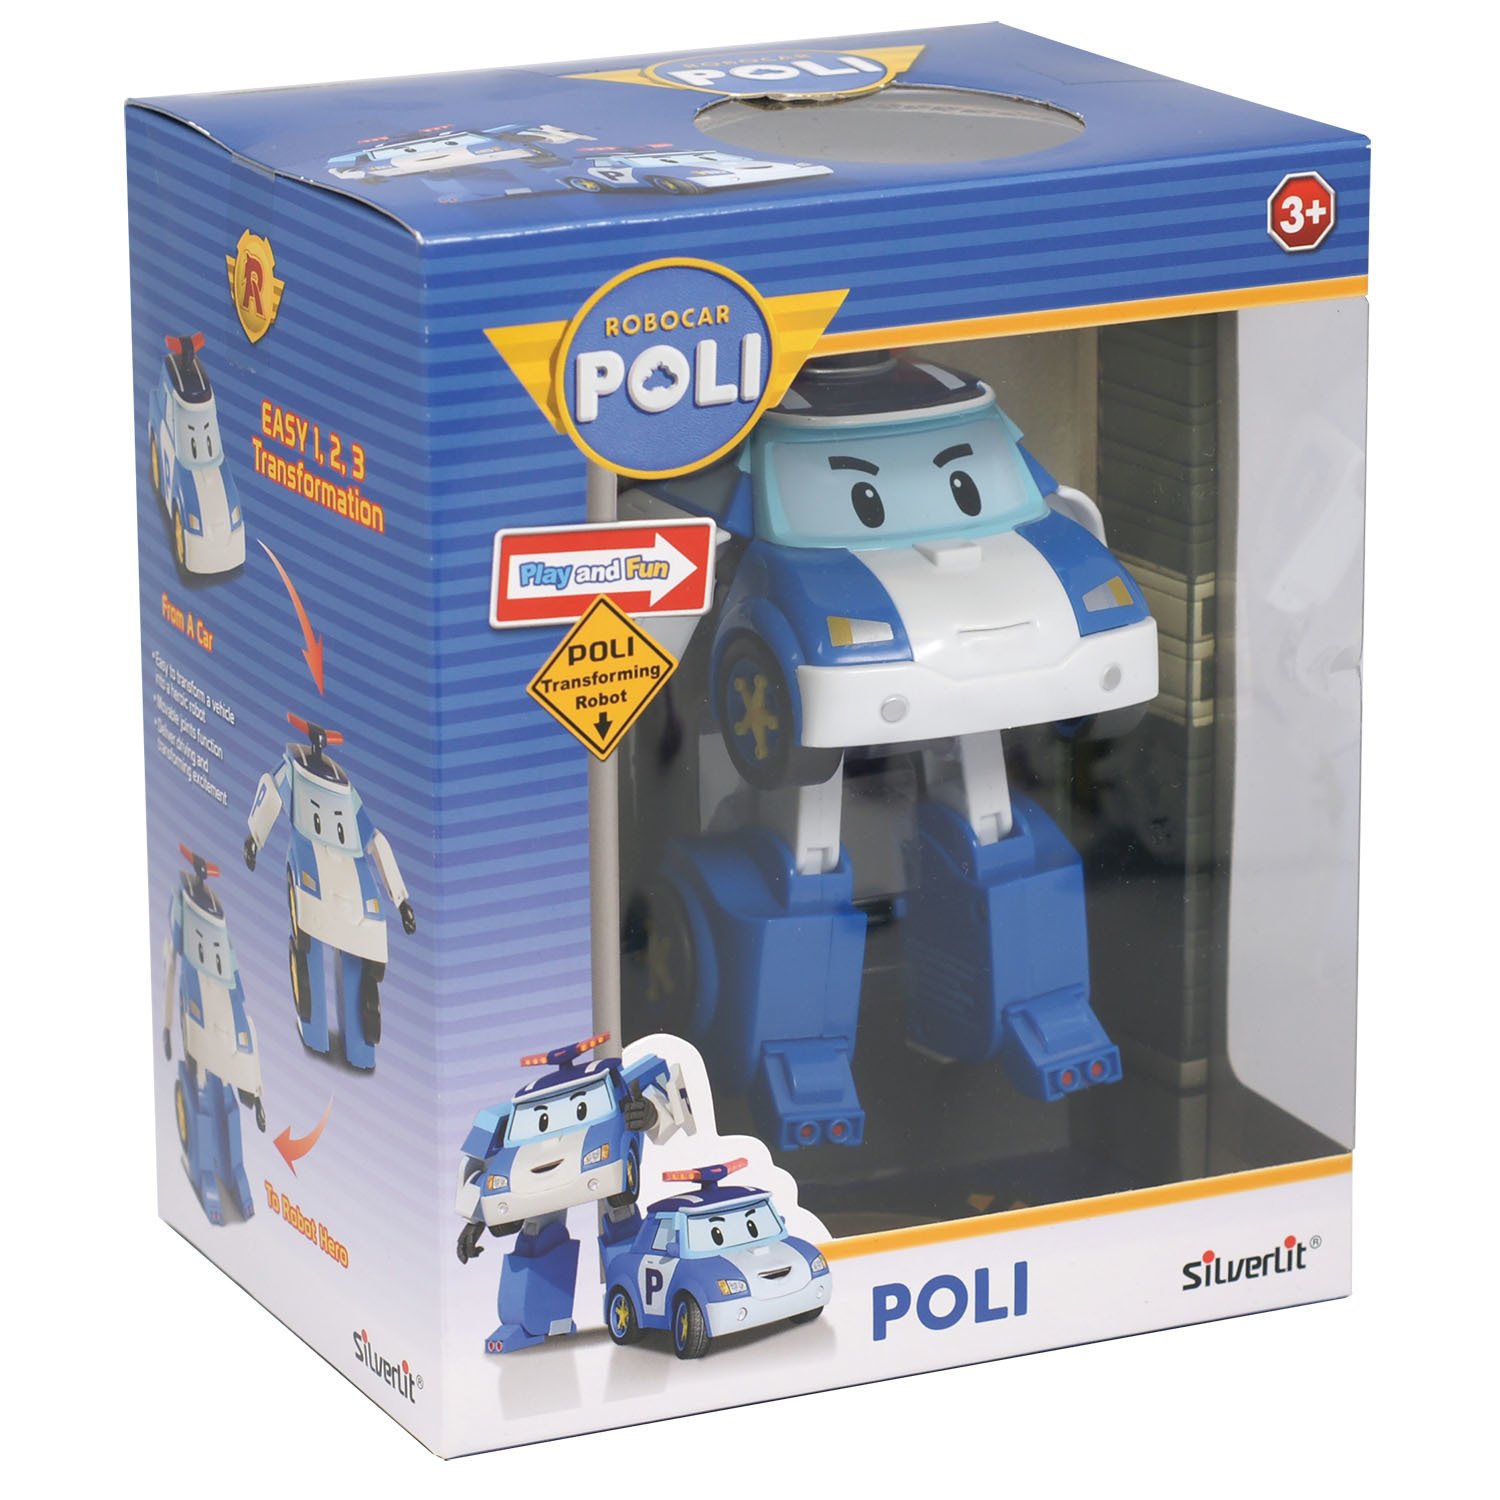 Робот робокар. Трансформер Poli Поли (83046). Робокар Поли игрушки. Поли Робокар игрушки трансформеры. Трансформер Поли Робокар Silverlit.